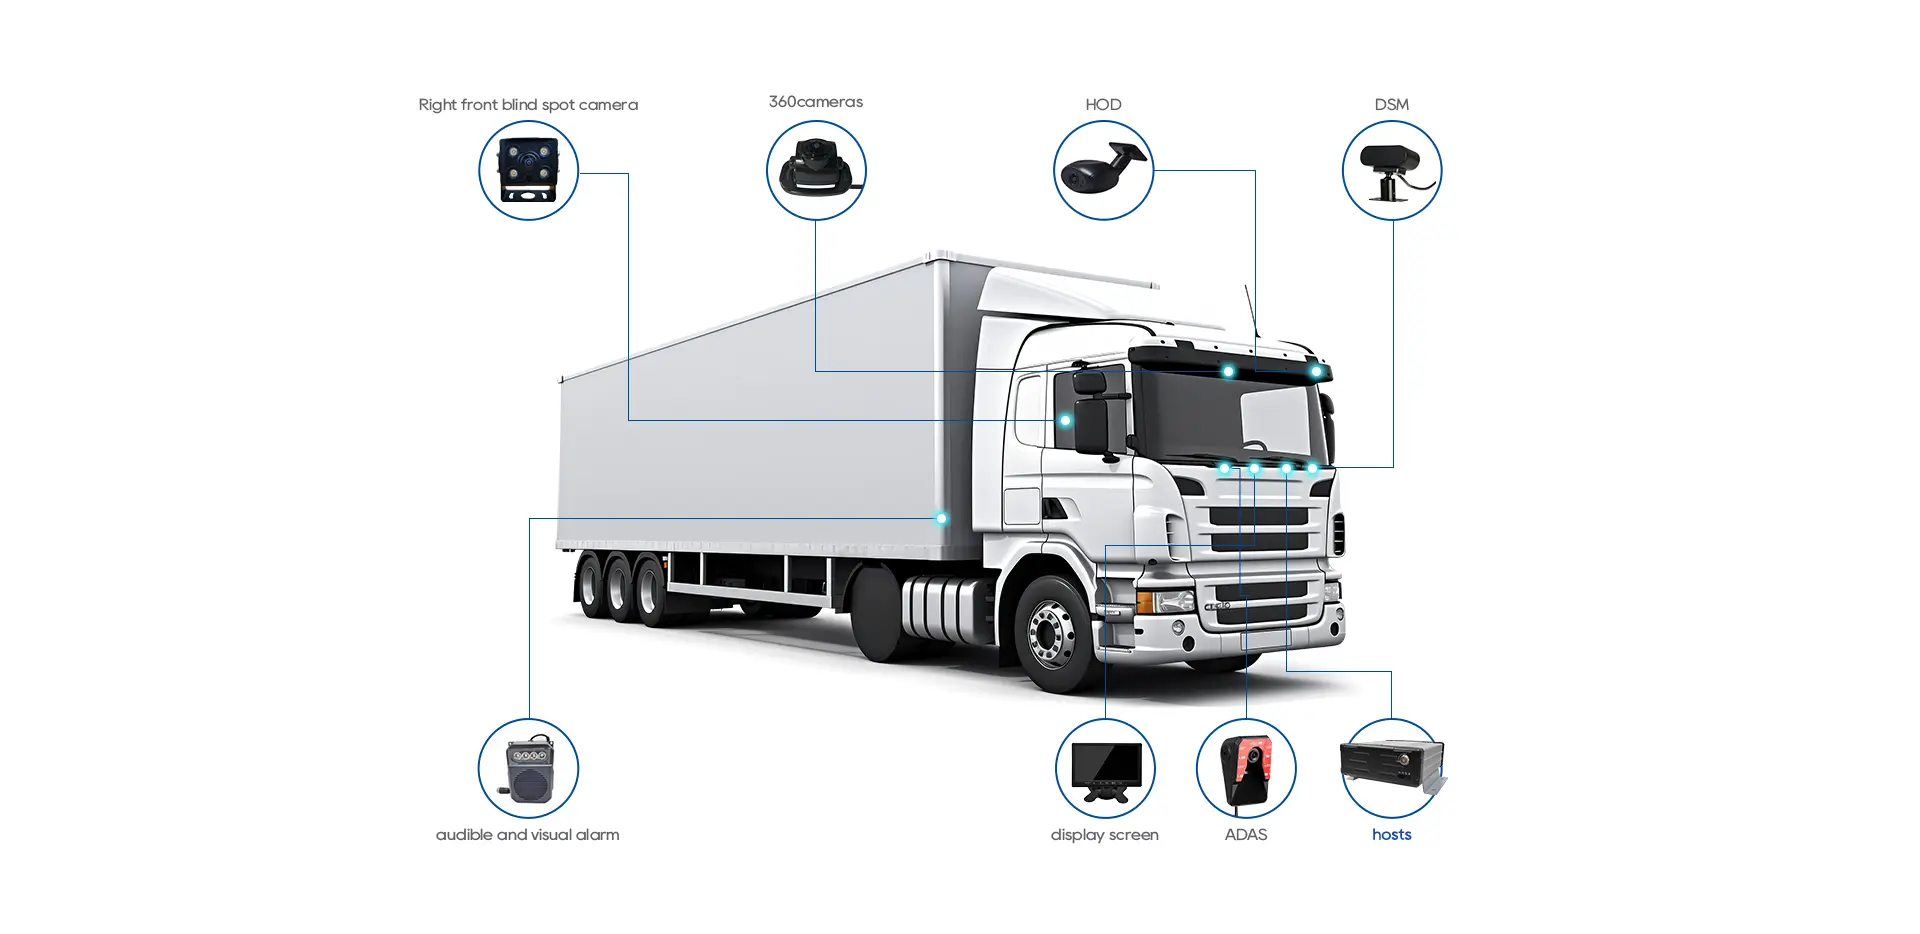 Truck camera system solution